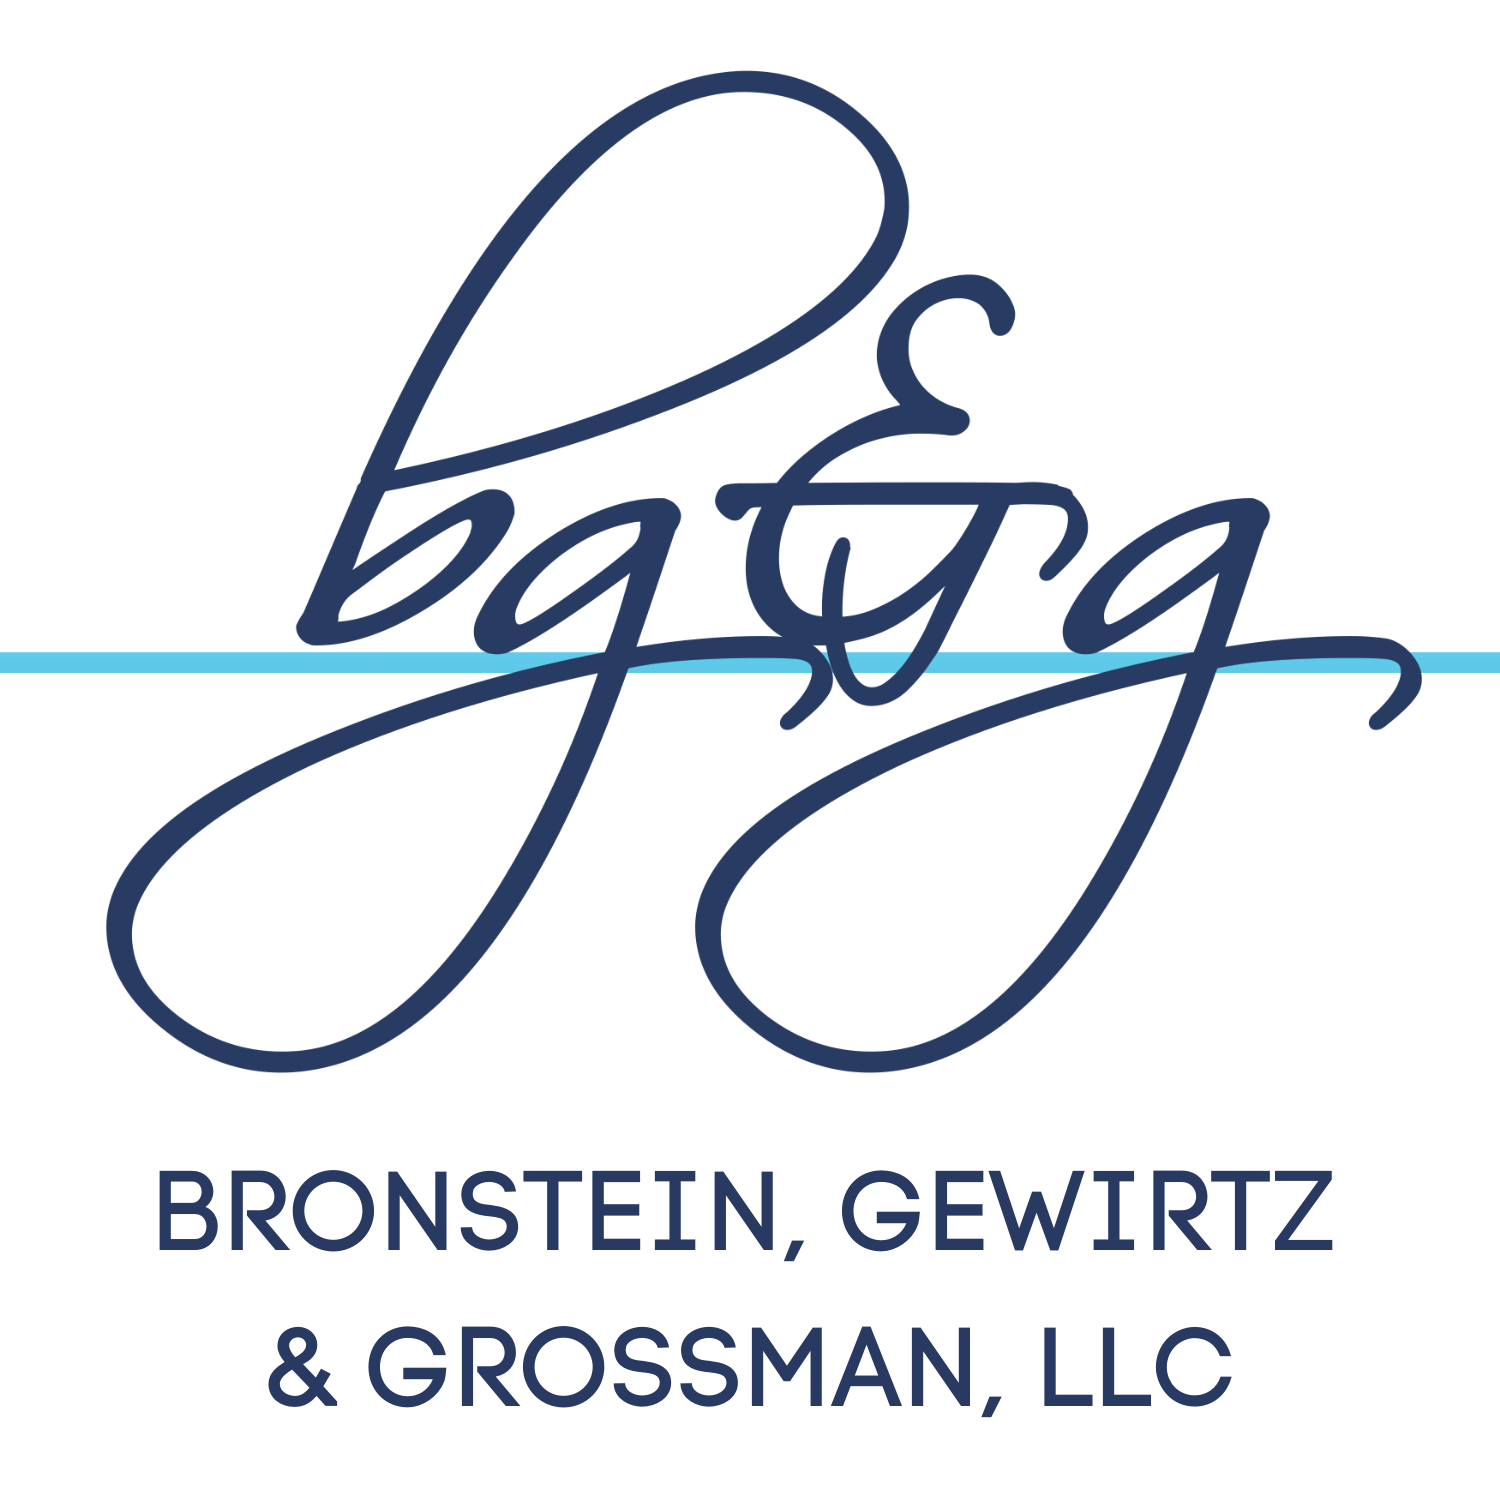 Bronstein, Gewirtz and Grossman, LLC, Monday, August 9, 2021, Press release picture